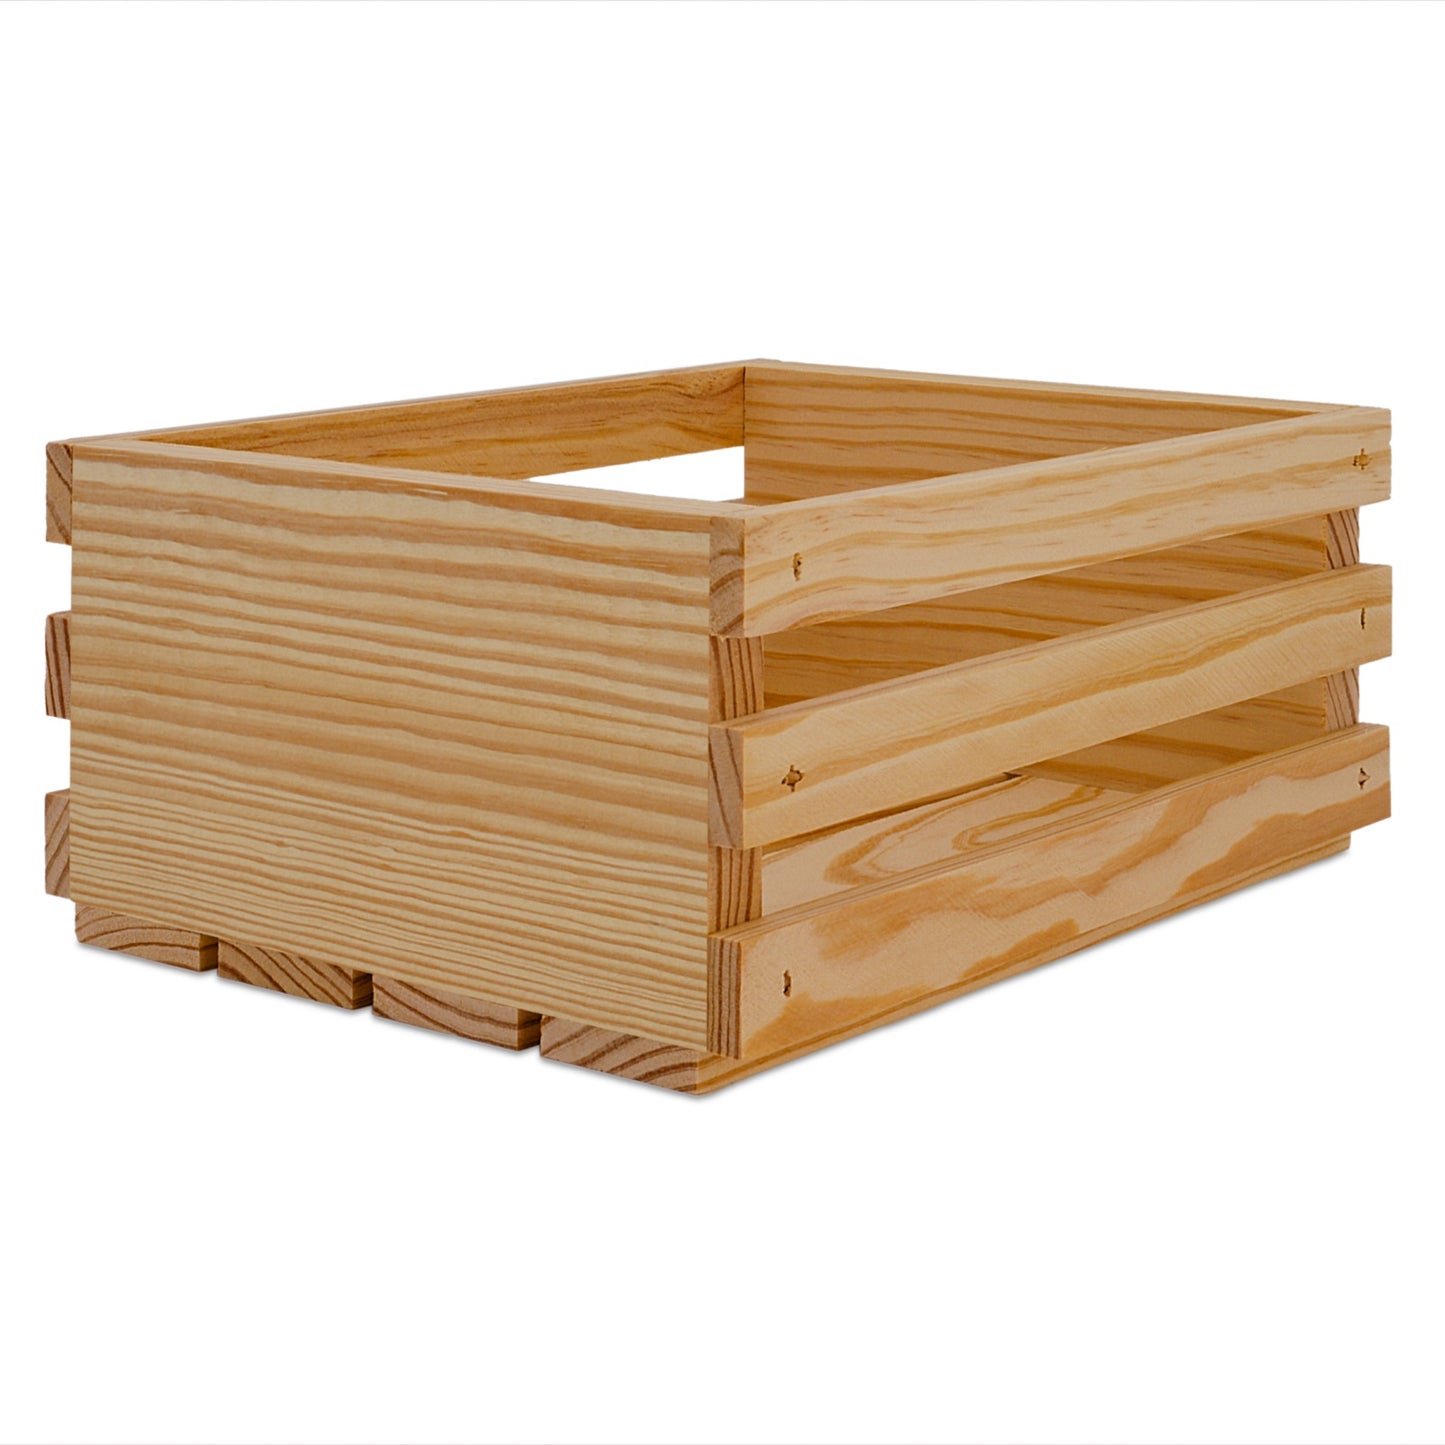 Small wooden crate 10x8x4.5, 6-SS-10-8-4.5-NX-NW-NL, 12-SS-10-8-4.5-NX-NW-NL, 24-SS-10-8-4.5-NX-NW-NL, 48-SS-10-8-4.5-NX-NW-NL, 96-SS-10-8-4.5-NX-NW-NL